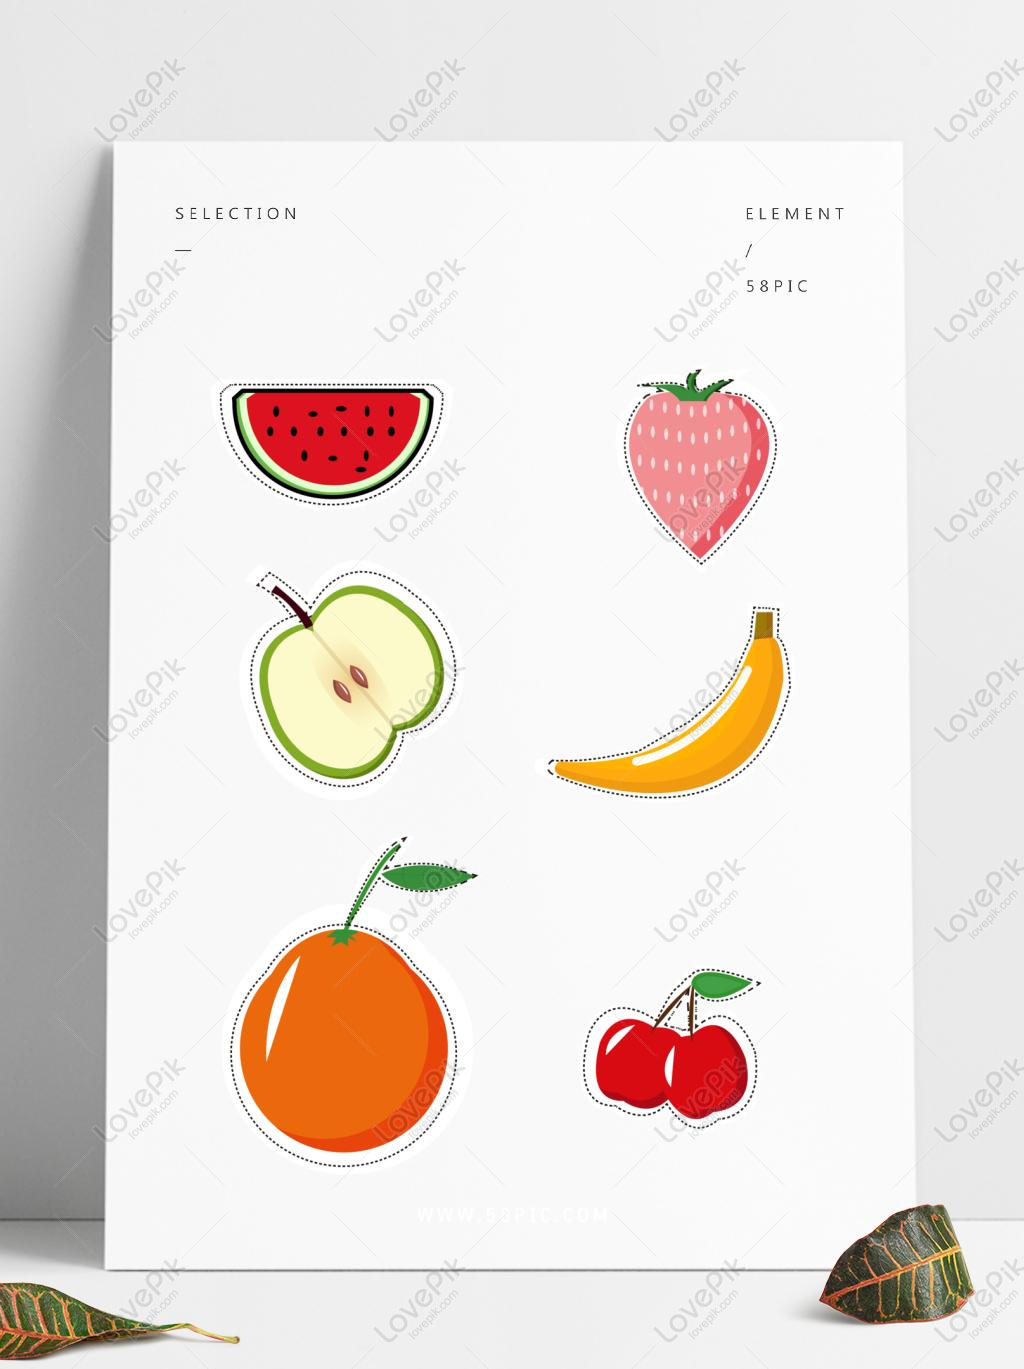 Với hình ảnh về trái cây bổ dưỡng và tươi ngon sẽ làm bạn thèm muốn ngay. Hãy cùng khám phá những loại trái cây đầy màu sắc và dinh dưỡng trong ảnh này nhé!